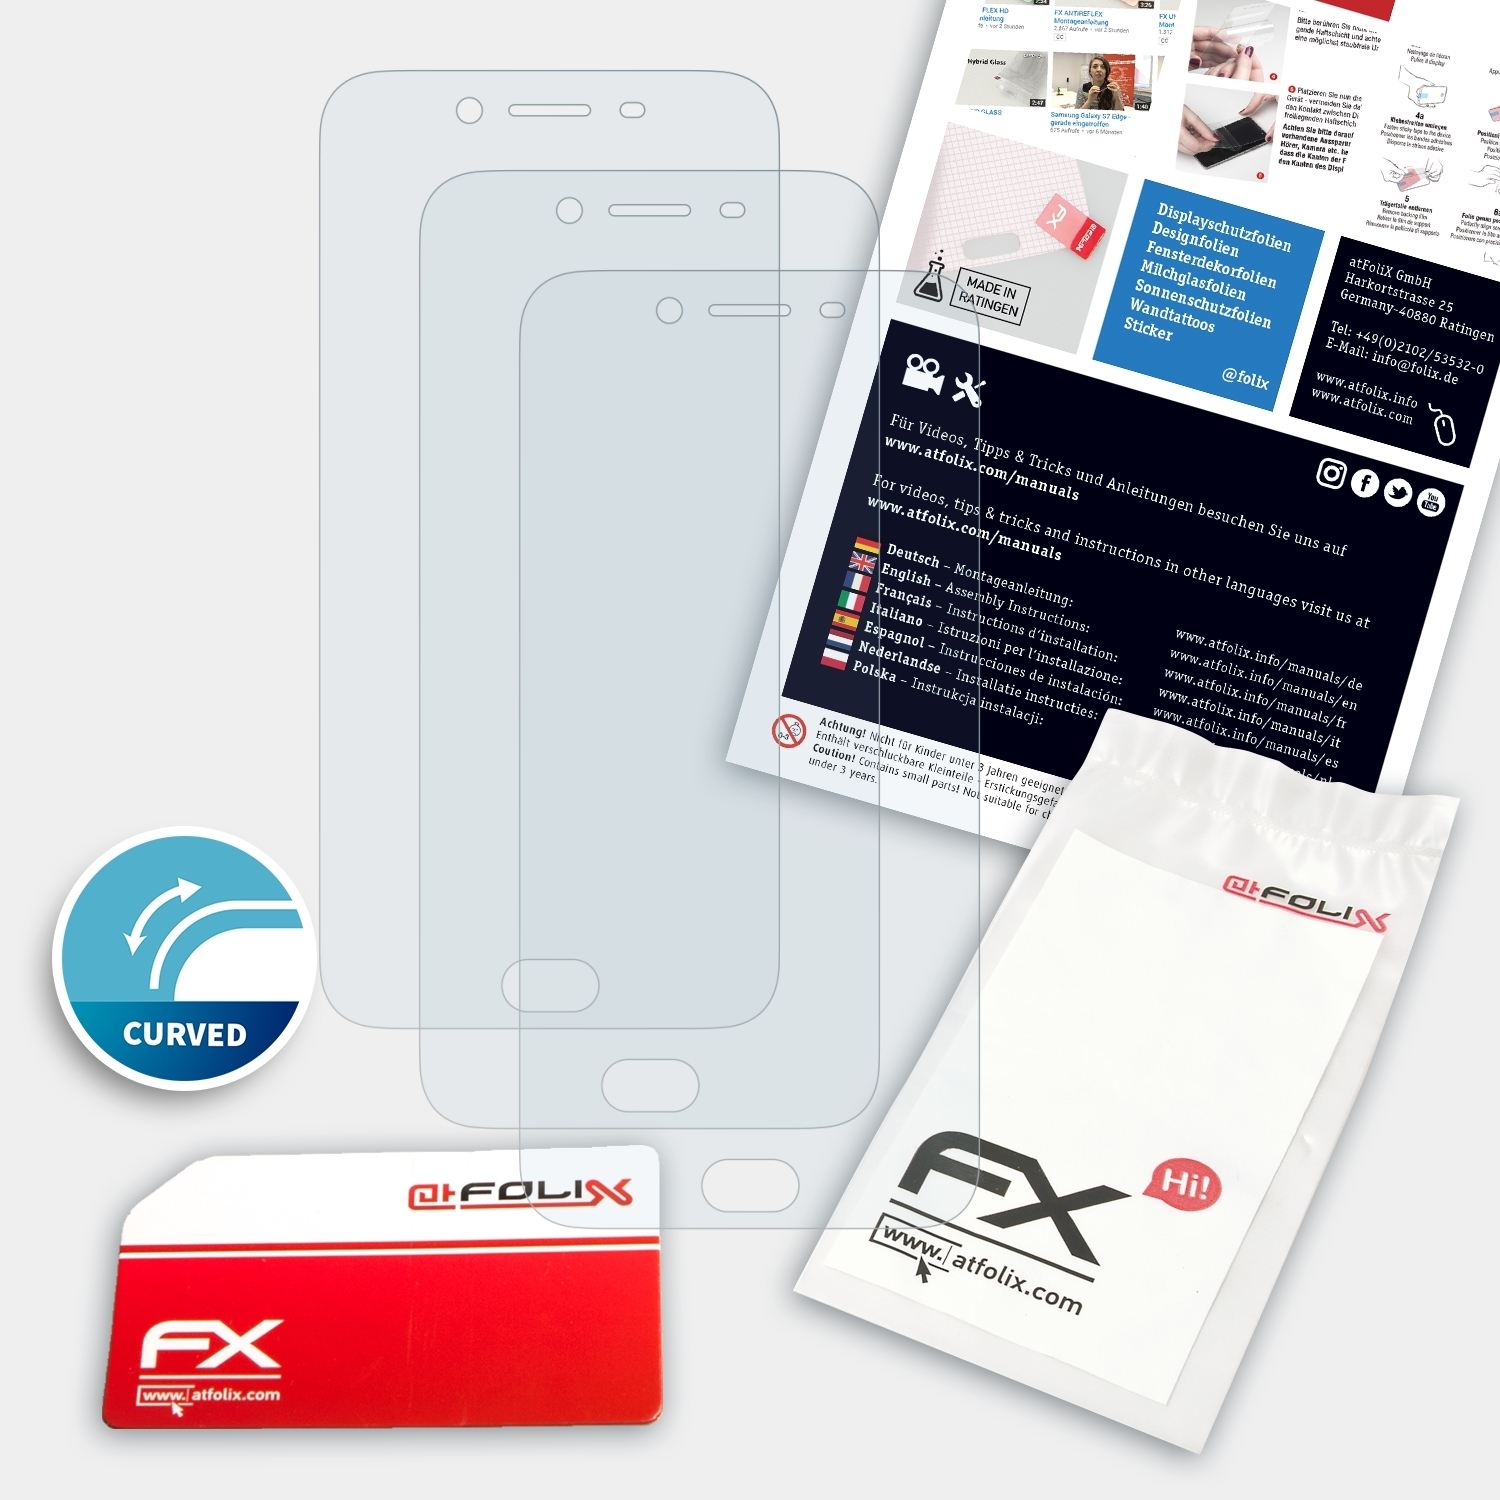 3x FX-ActiFleX Oppo ATFOLIX Plus) Displayschutz(für R9s